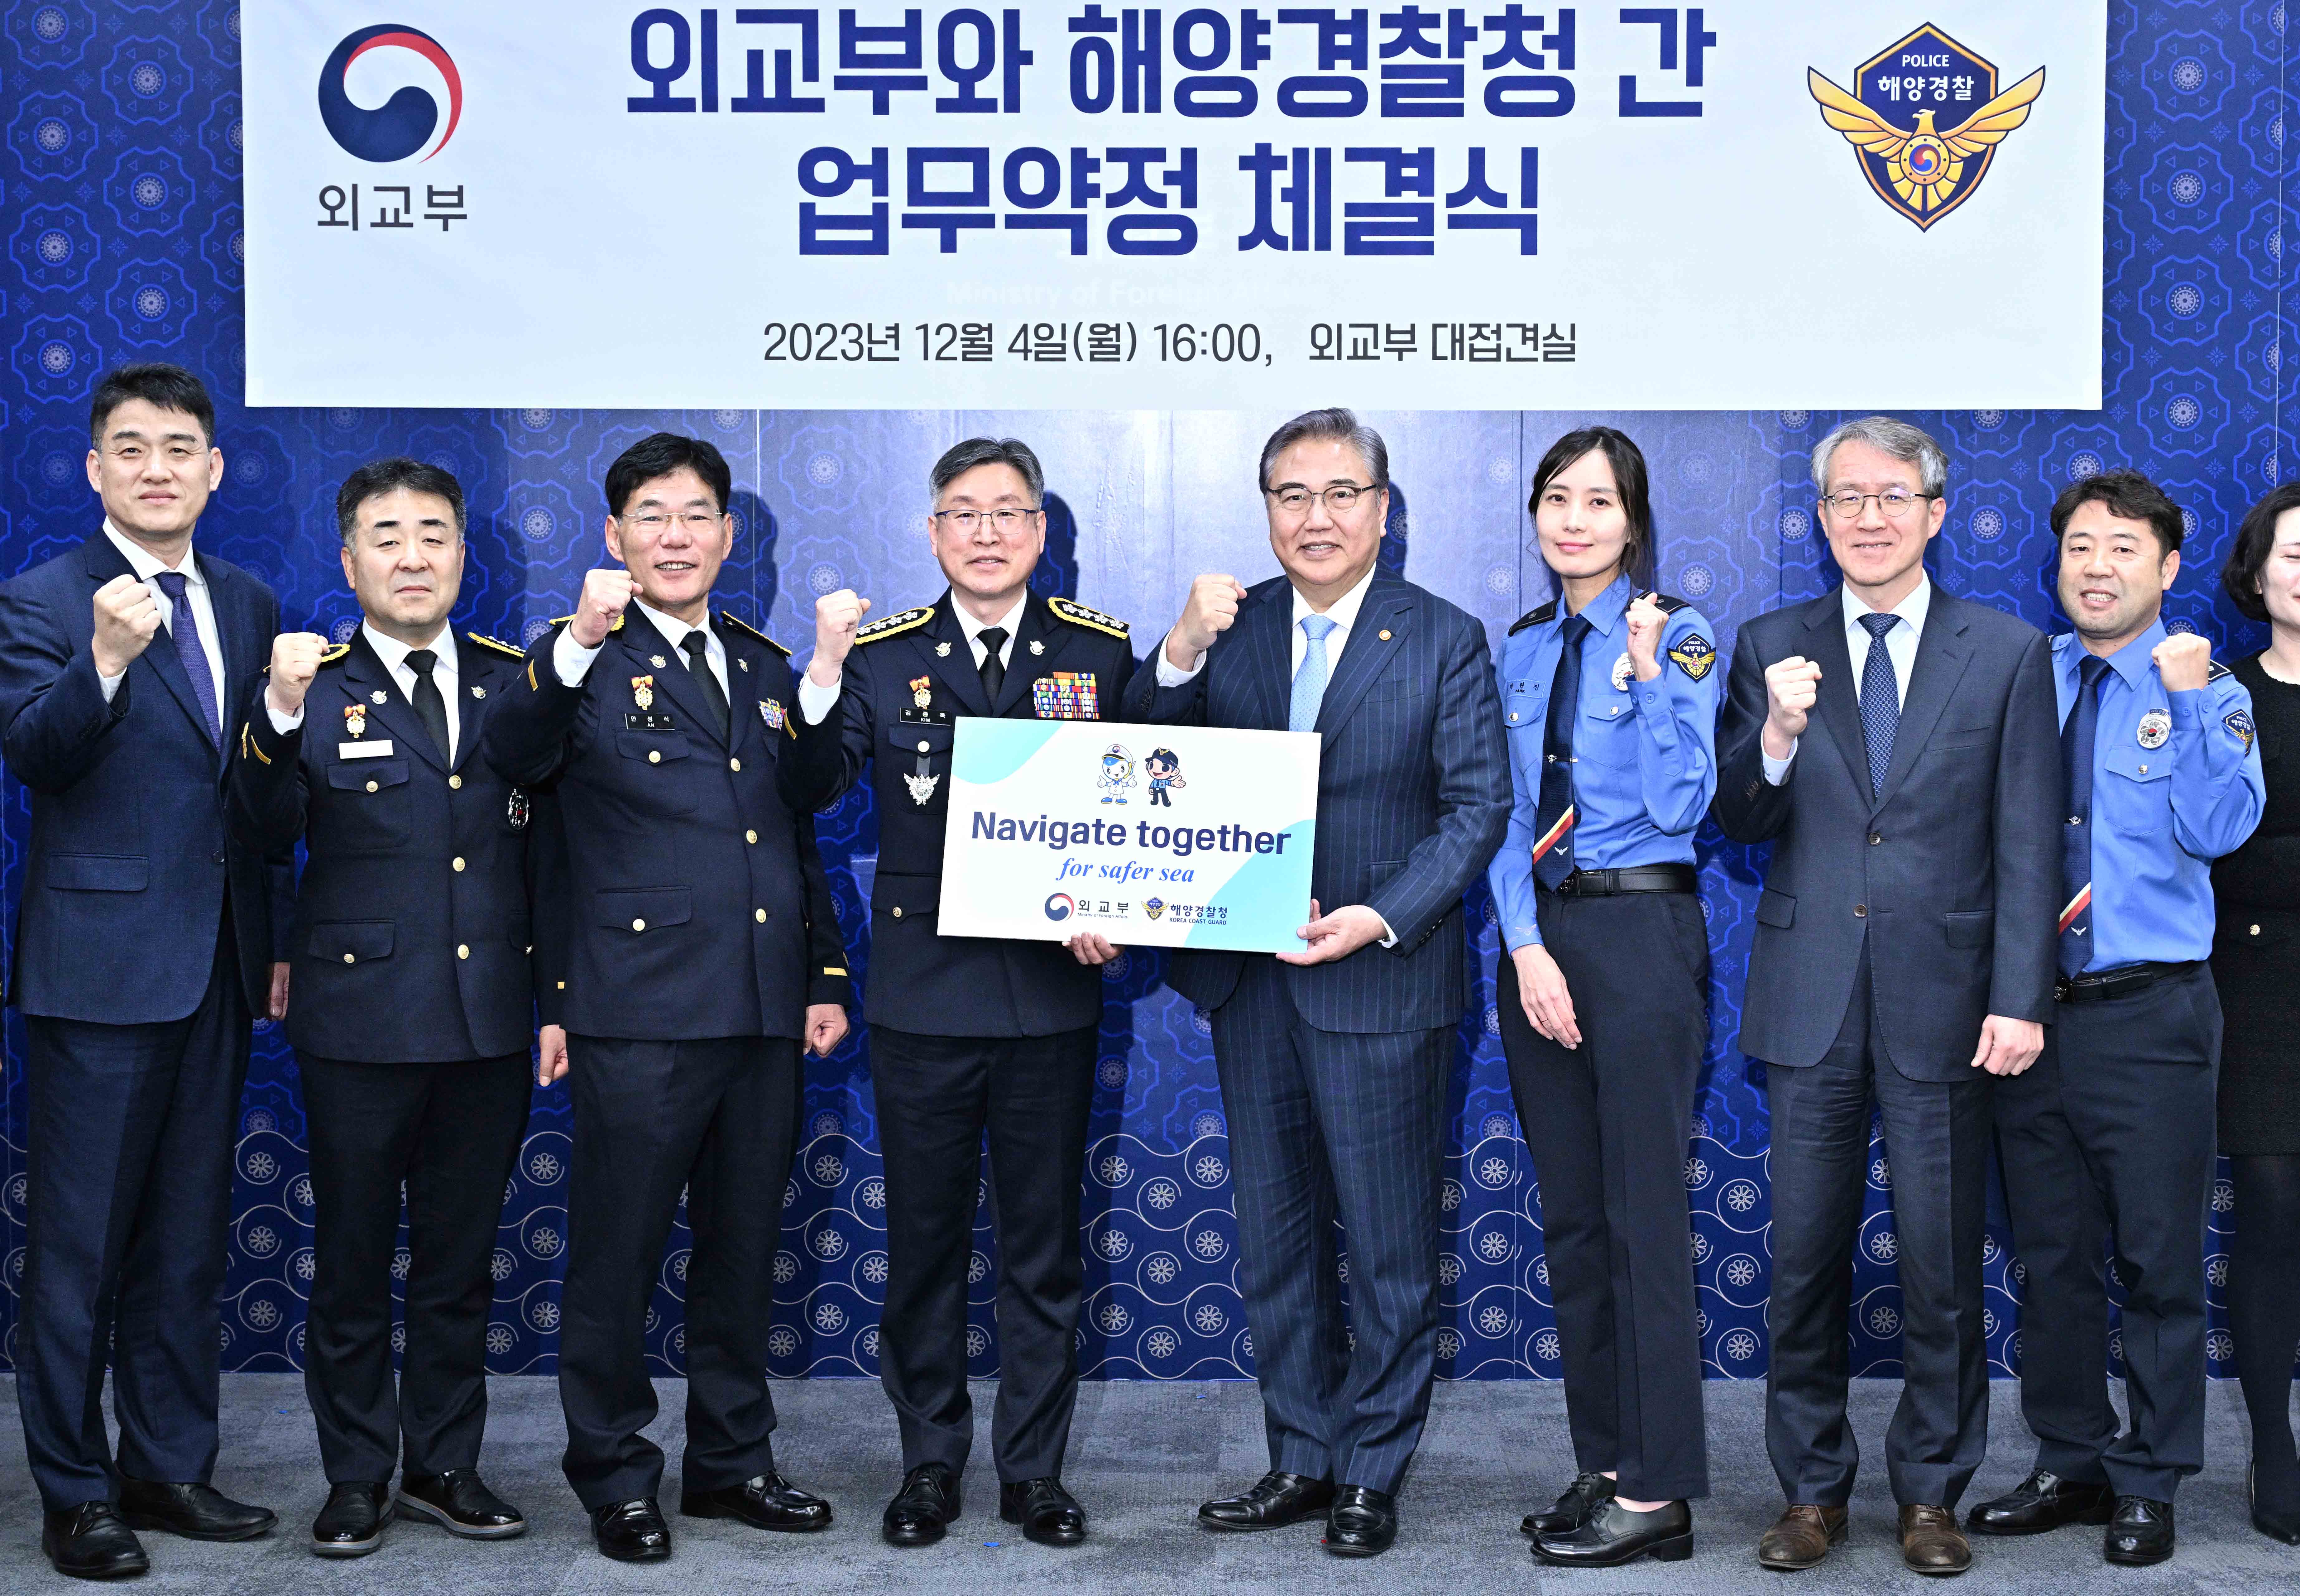 박진 장관, 우리 국적 선박 및 재외국민 보호 협력체계 강화를 위한 업무약정 서명